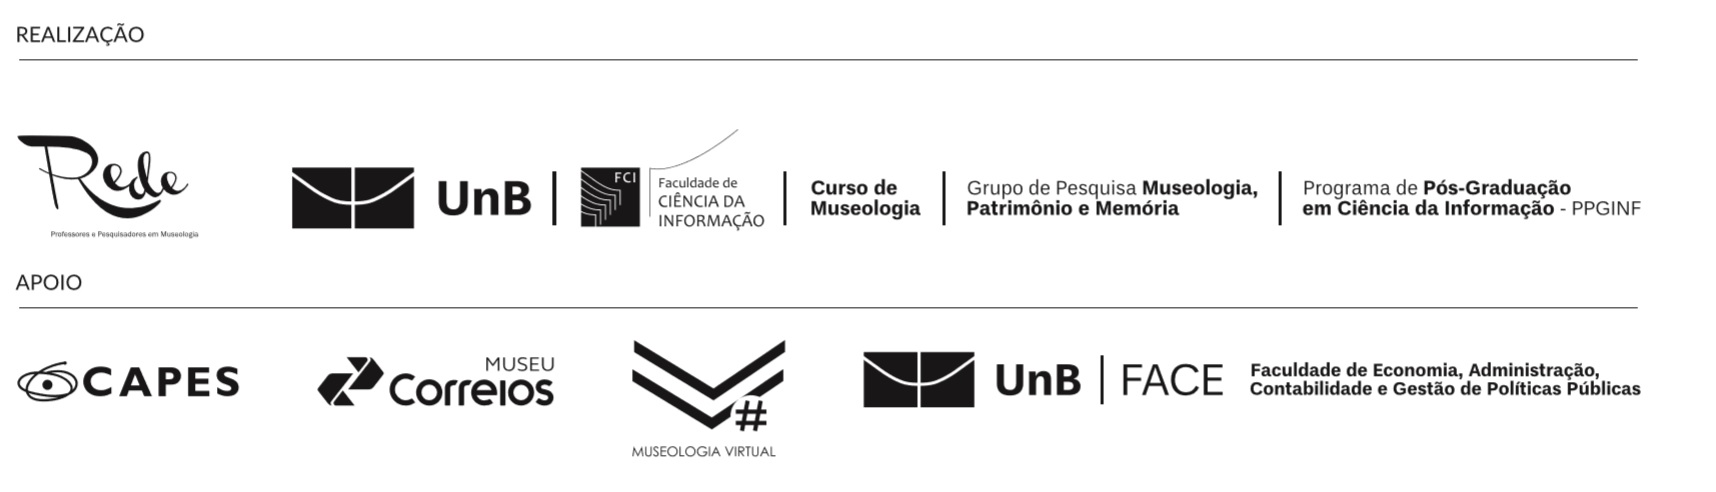 UnB - Universidade de BrasÃ­lia